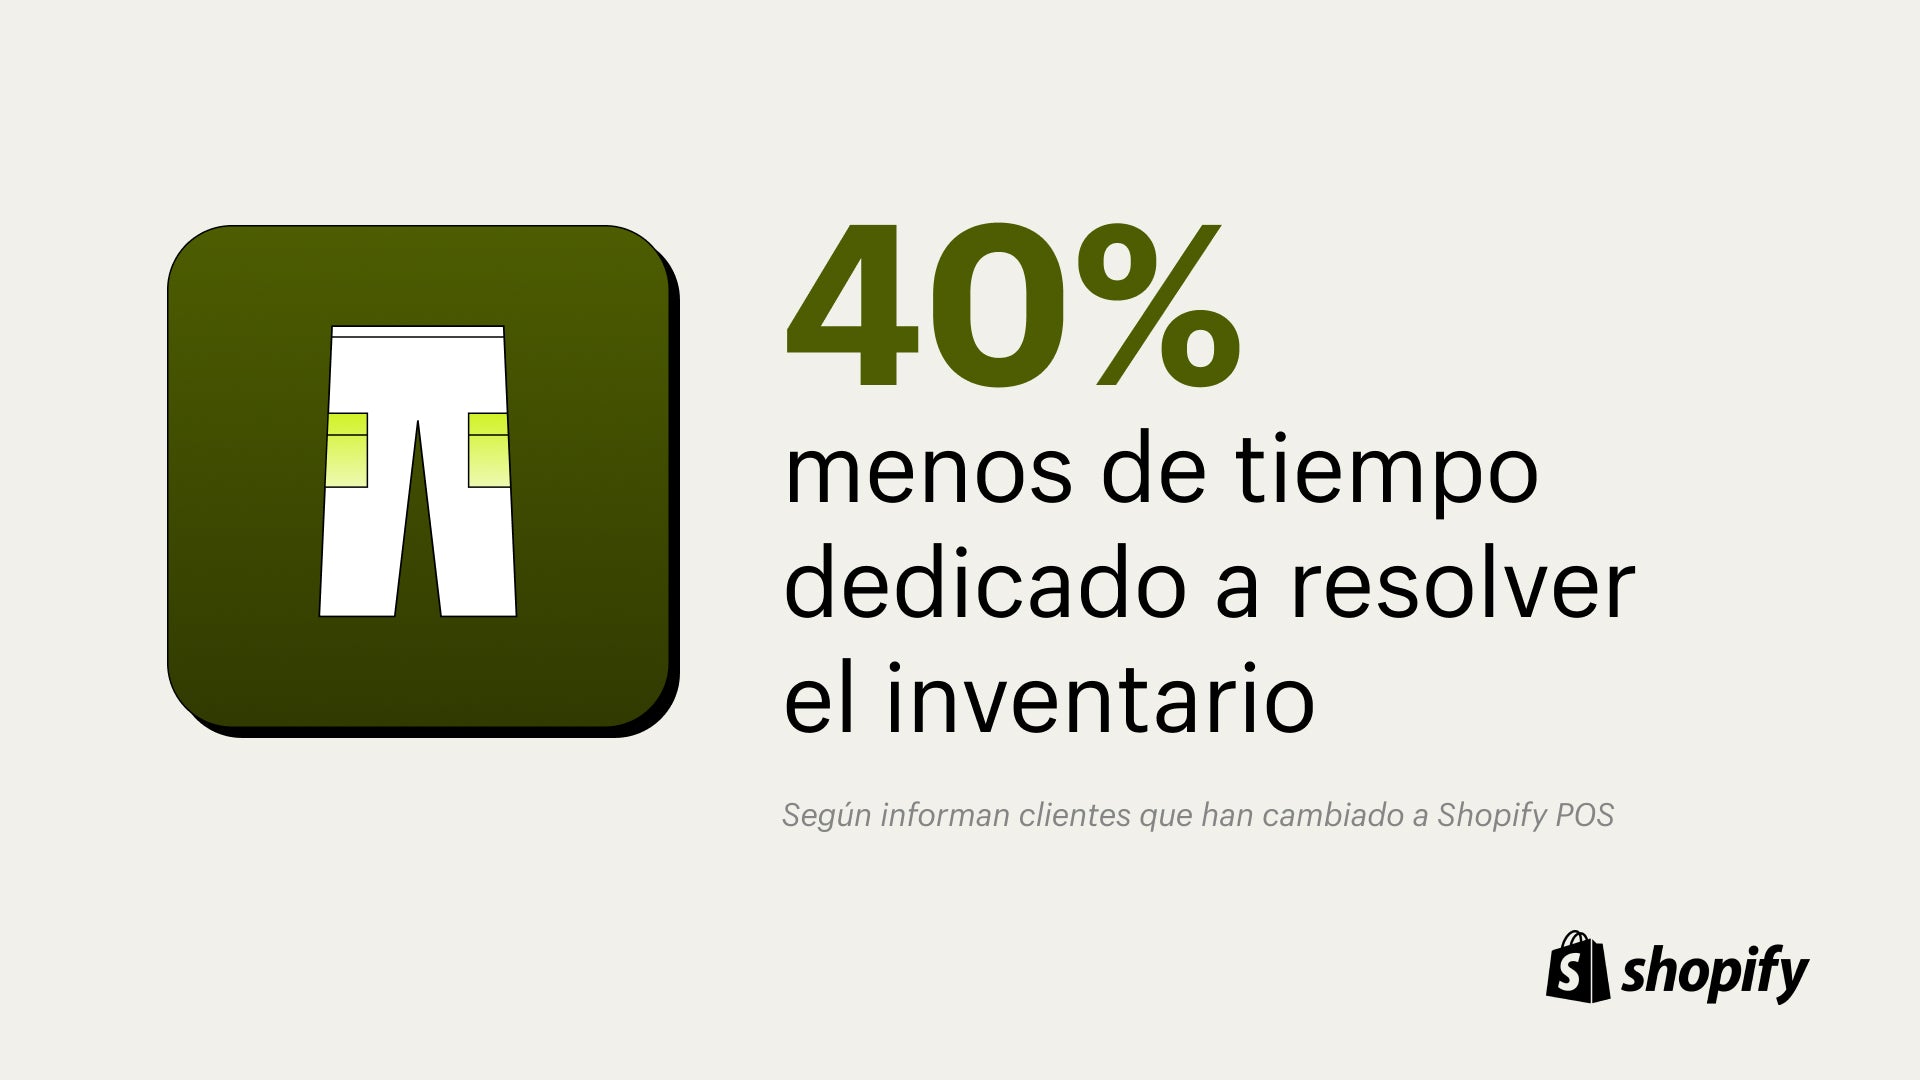 Imagen de pantalones blancos sobre fondo verde con un dato que indica que se dedica un 40% menos de tiempo a registrar el inventario con Shopify POS.